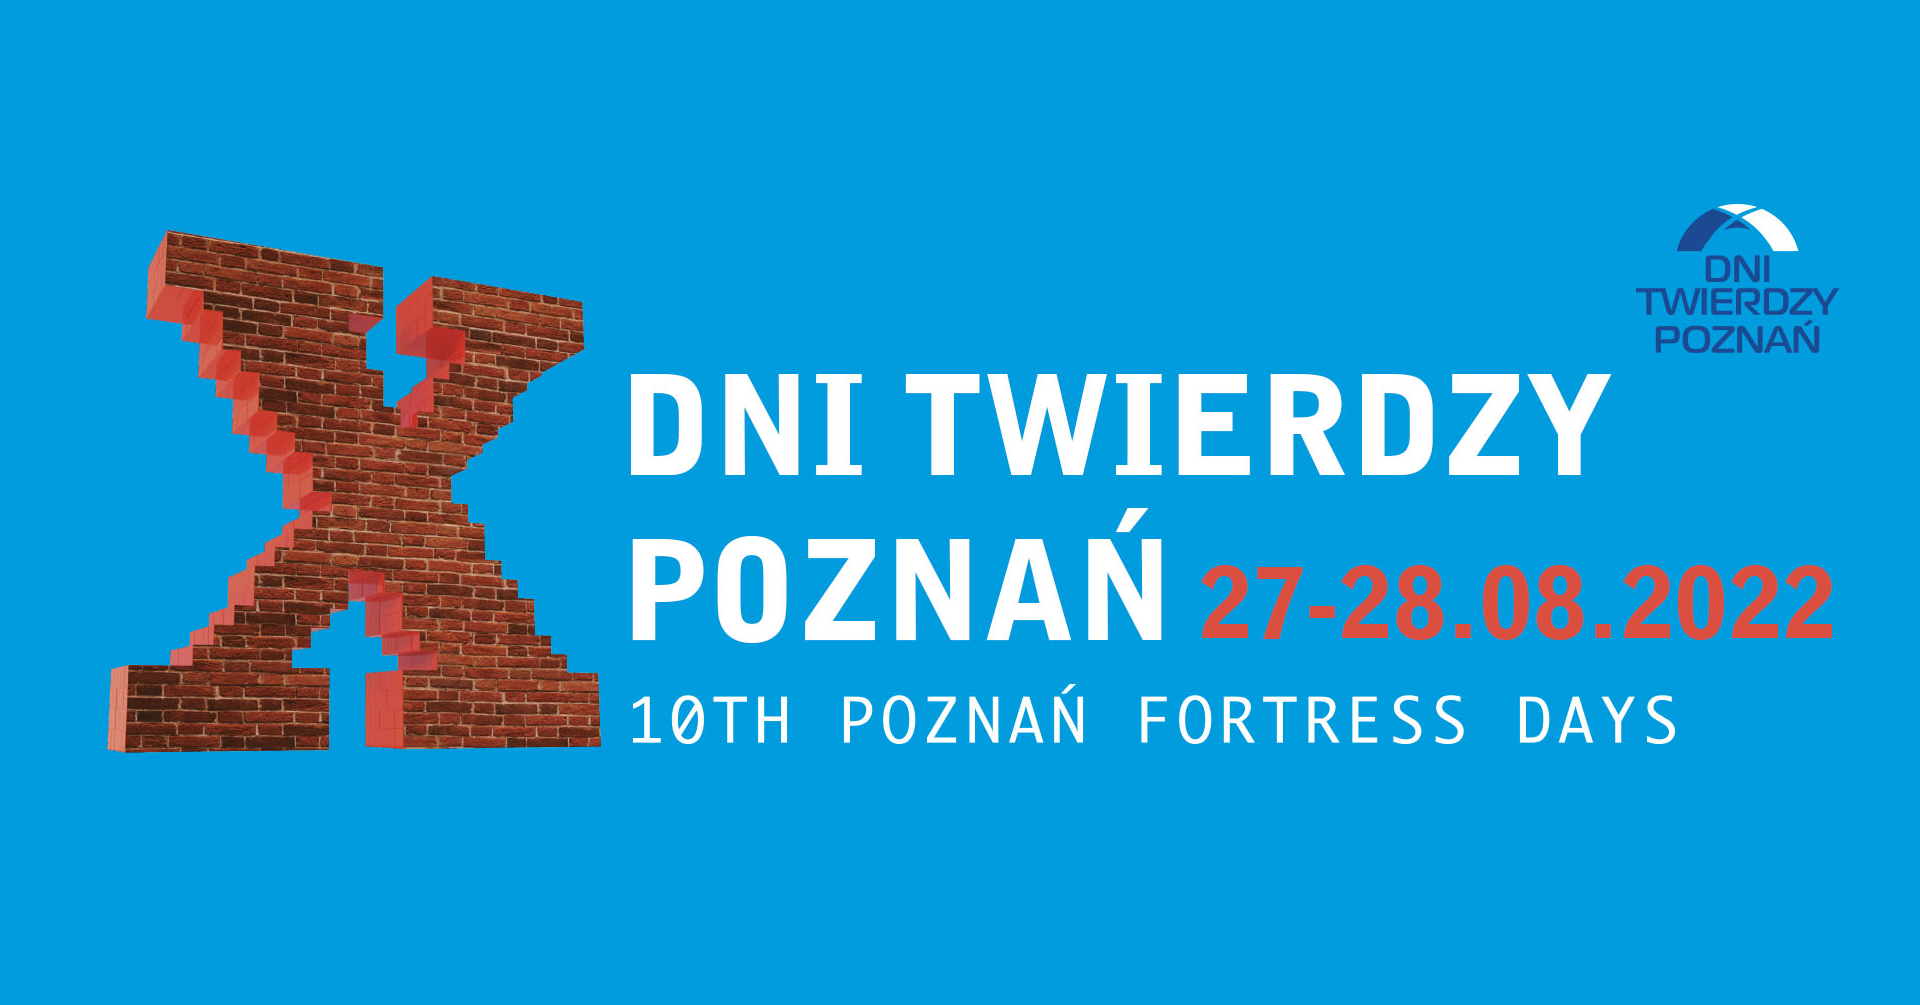 Dni Twierdzy Poznań 27-28.08.2022 r. 